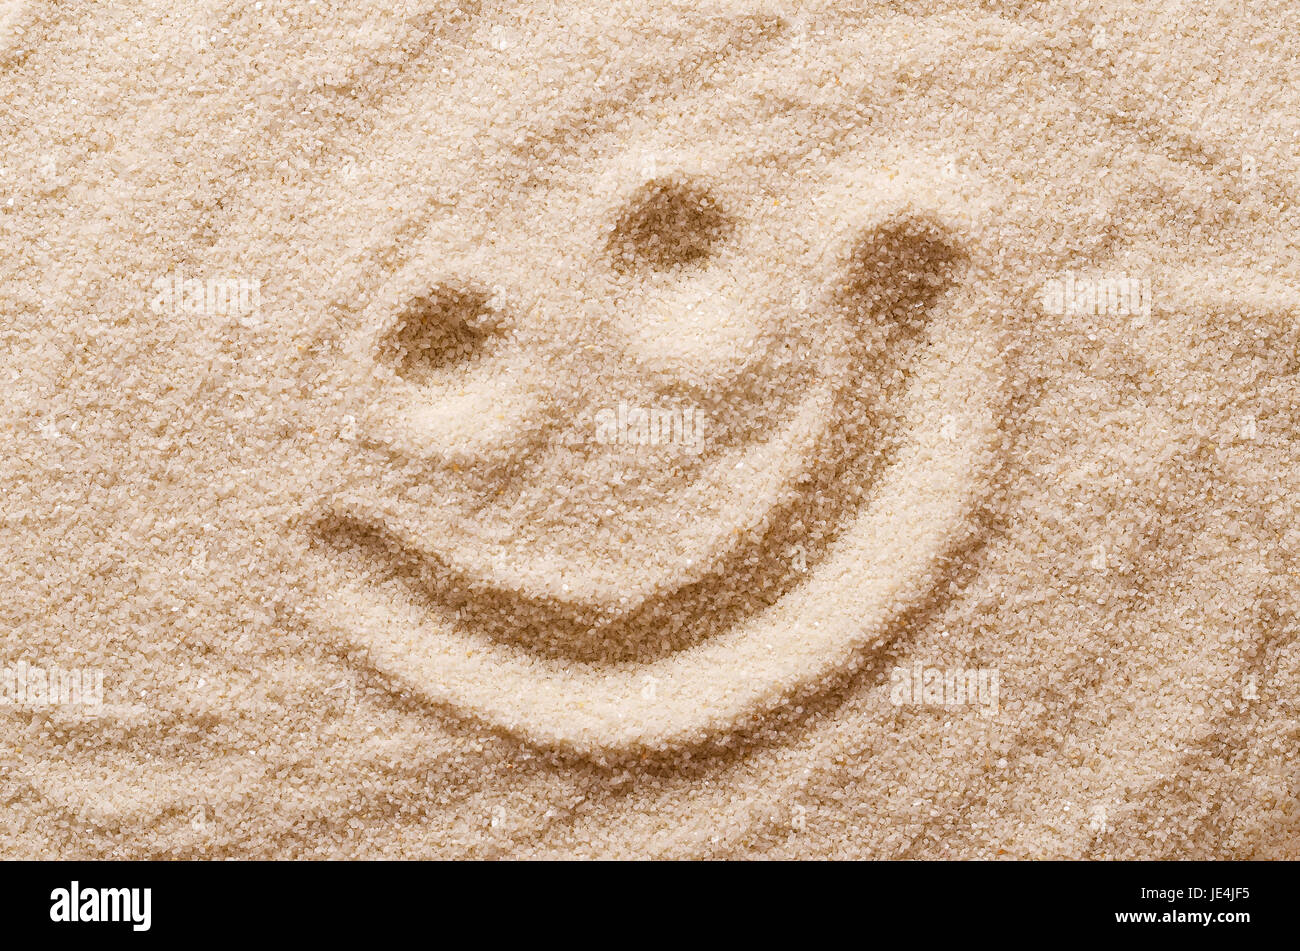 Happy smiling face dans le sable. Les yeux et la bouche avec un doigt dans le sable ocre sec. Macro photo close up à partir de ci-dessus. Banque D'Images